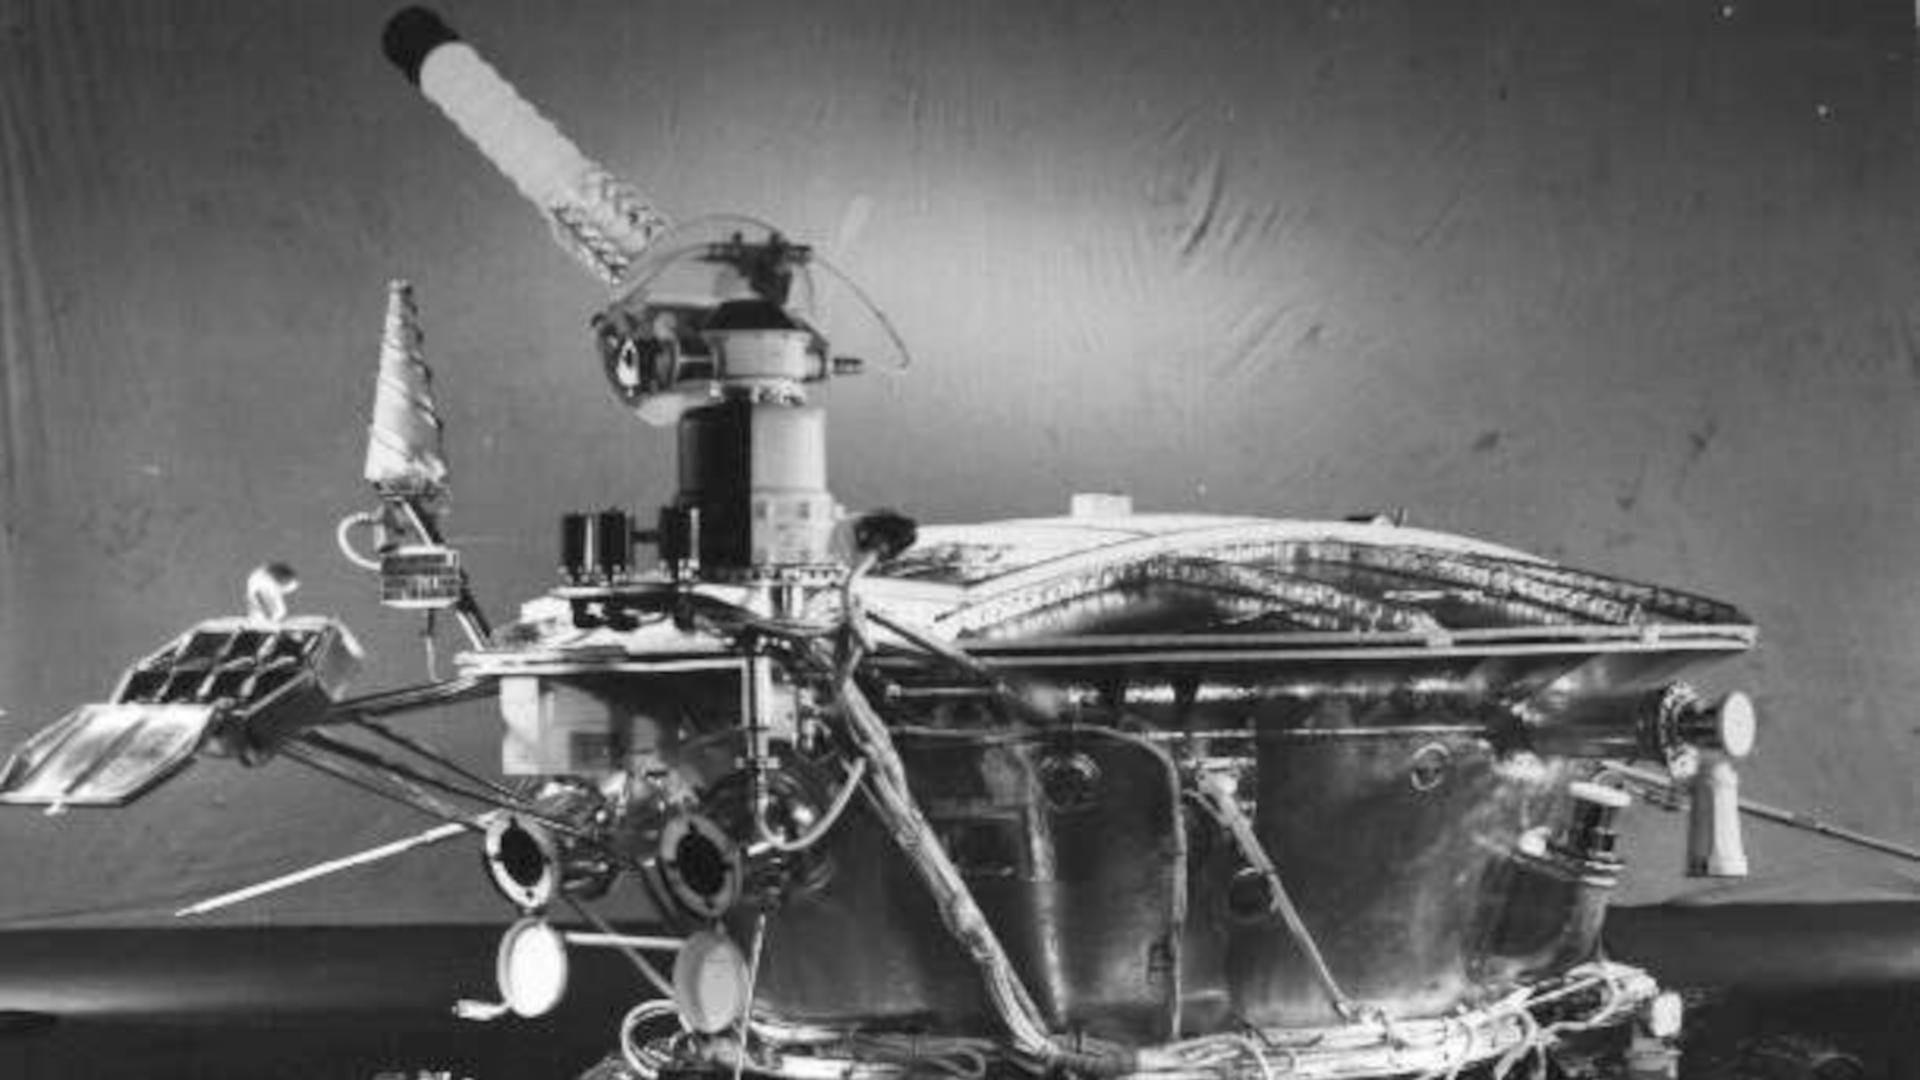 Die Lunochod-Rover ist etwa 2,3 Meter lang und 1,5 Meter hoch. (NASA)